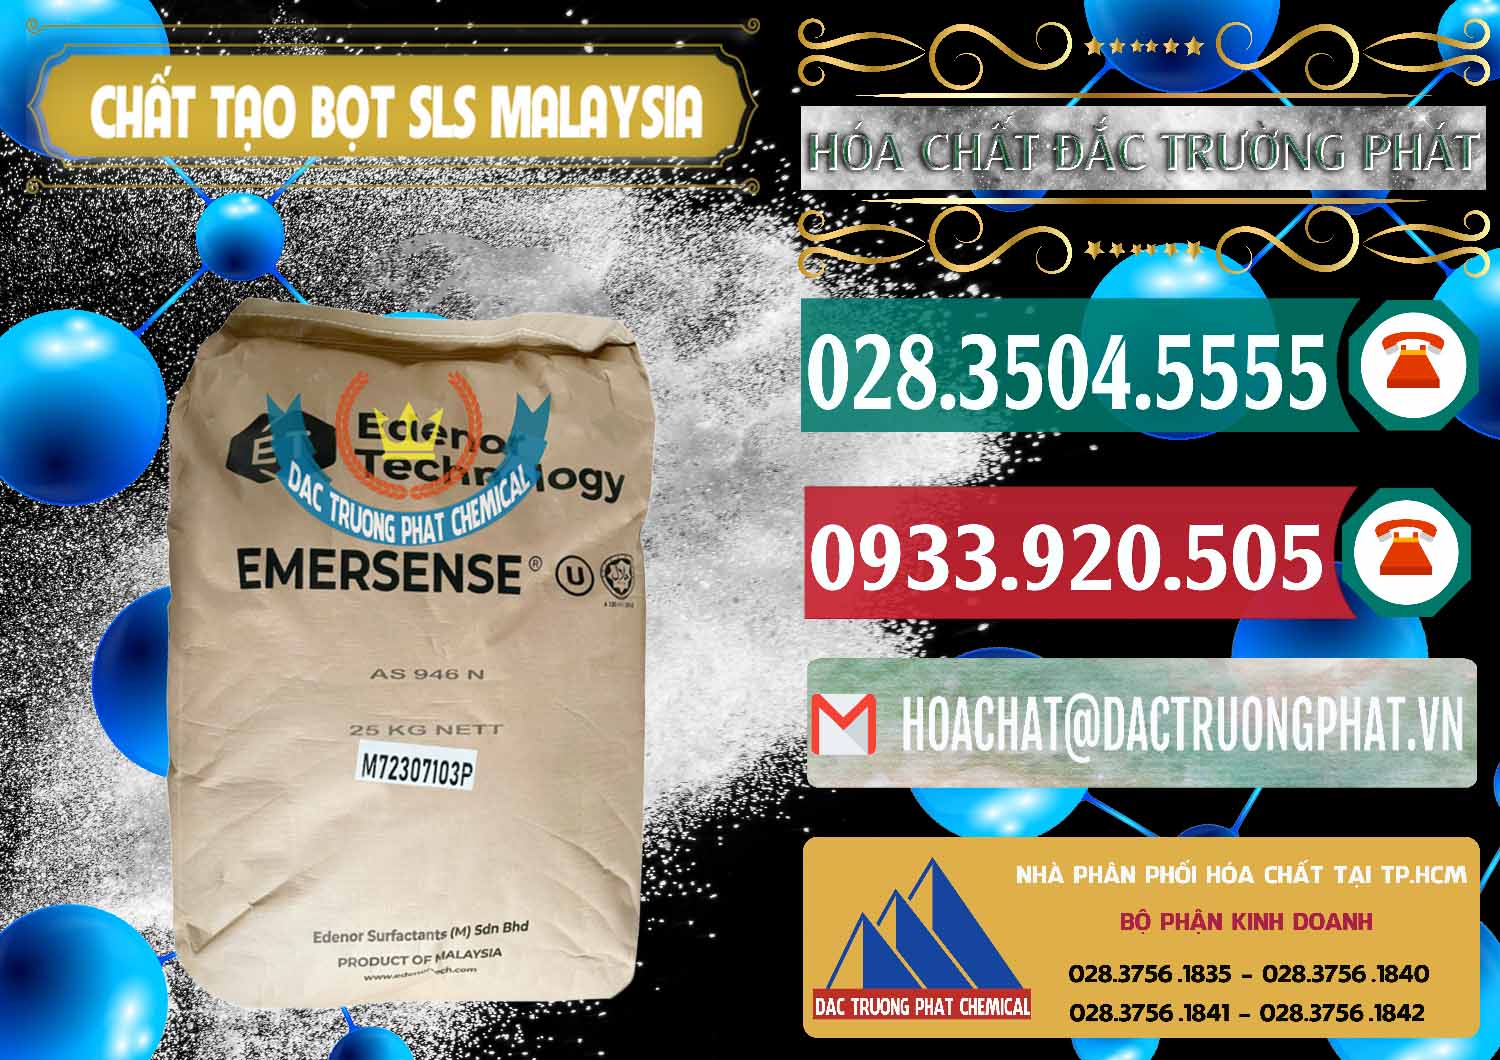 Công ty cung ứng & bán Chất Tạo Bọt SLS Emersense Mã Lai Malaysia - 0381 - Cty bán ( cung cấp ) hóa chất tại TP.HCM - muabanhoachat.vn